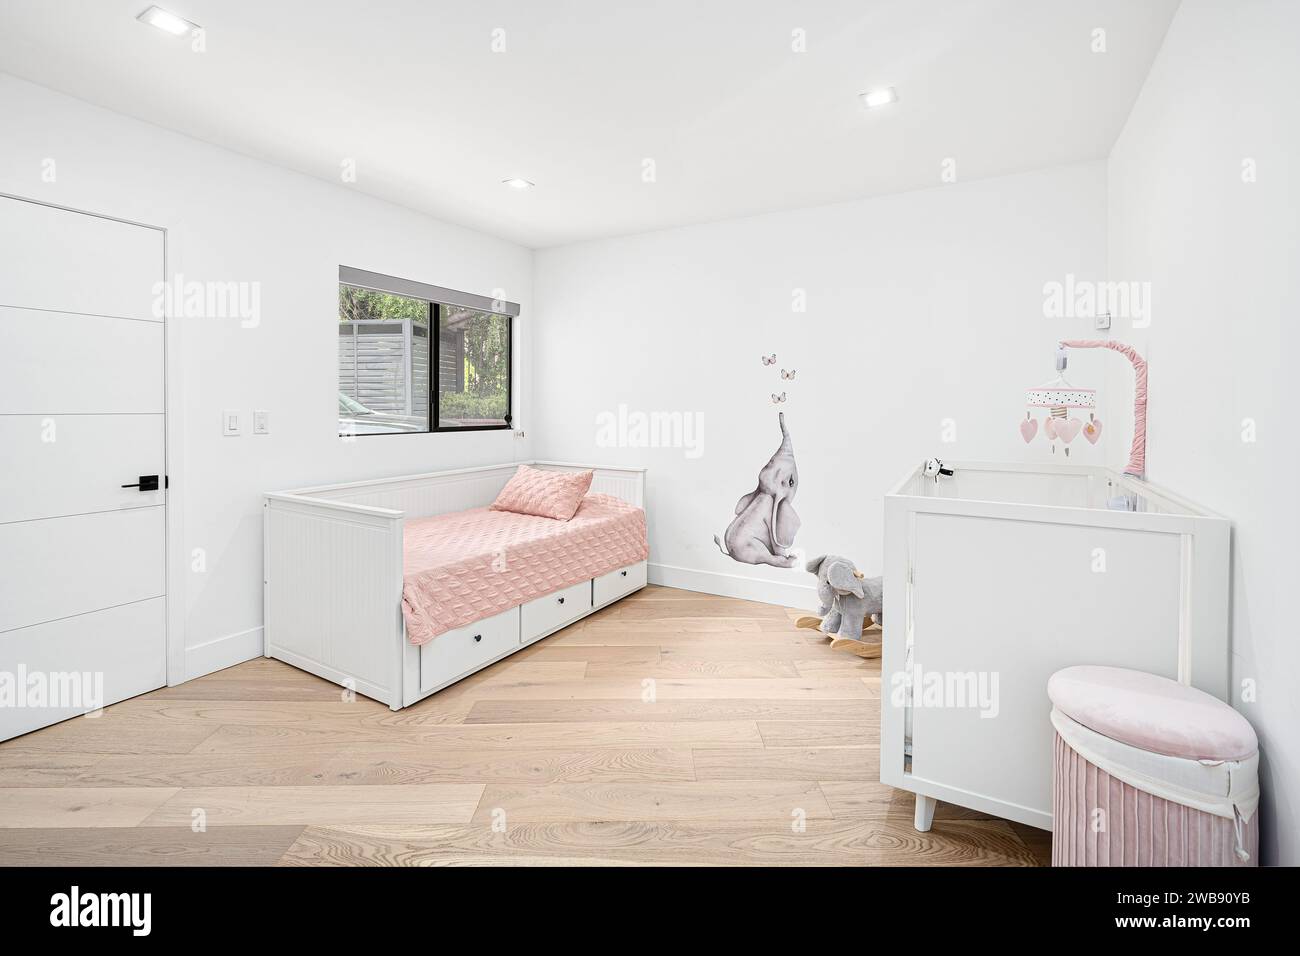 Un'intima camera da letto presenta pareti dipinte di bianco, letti gemelli e pavimento in legno, a creare un'atmosfera calda e invitante Foto Stock